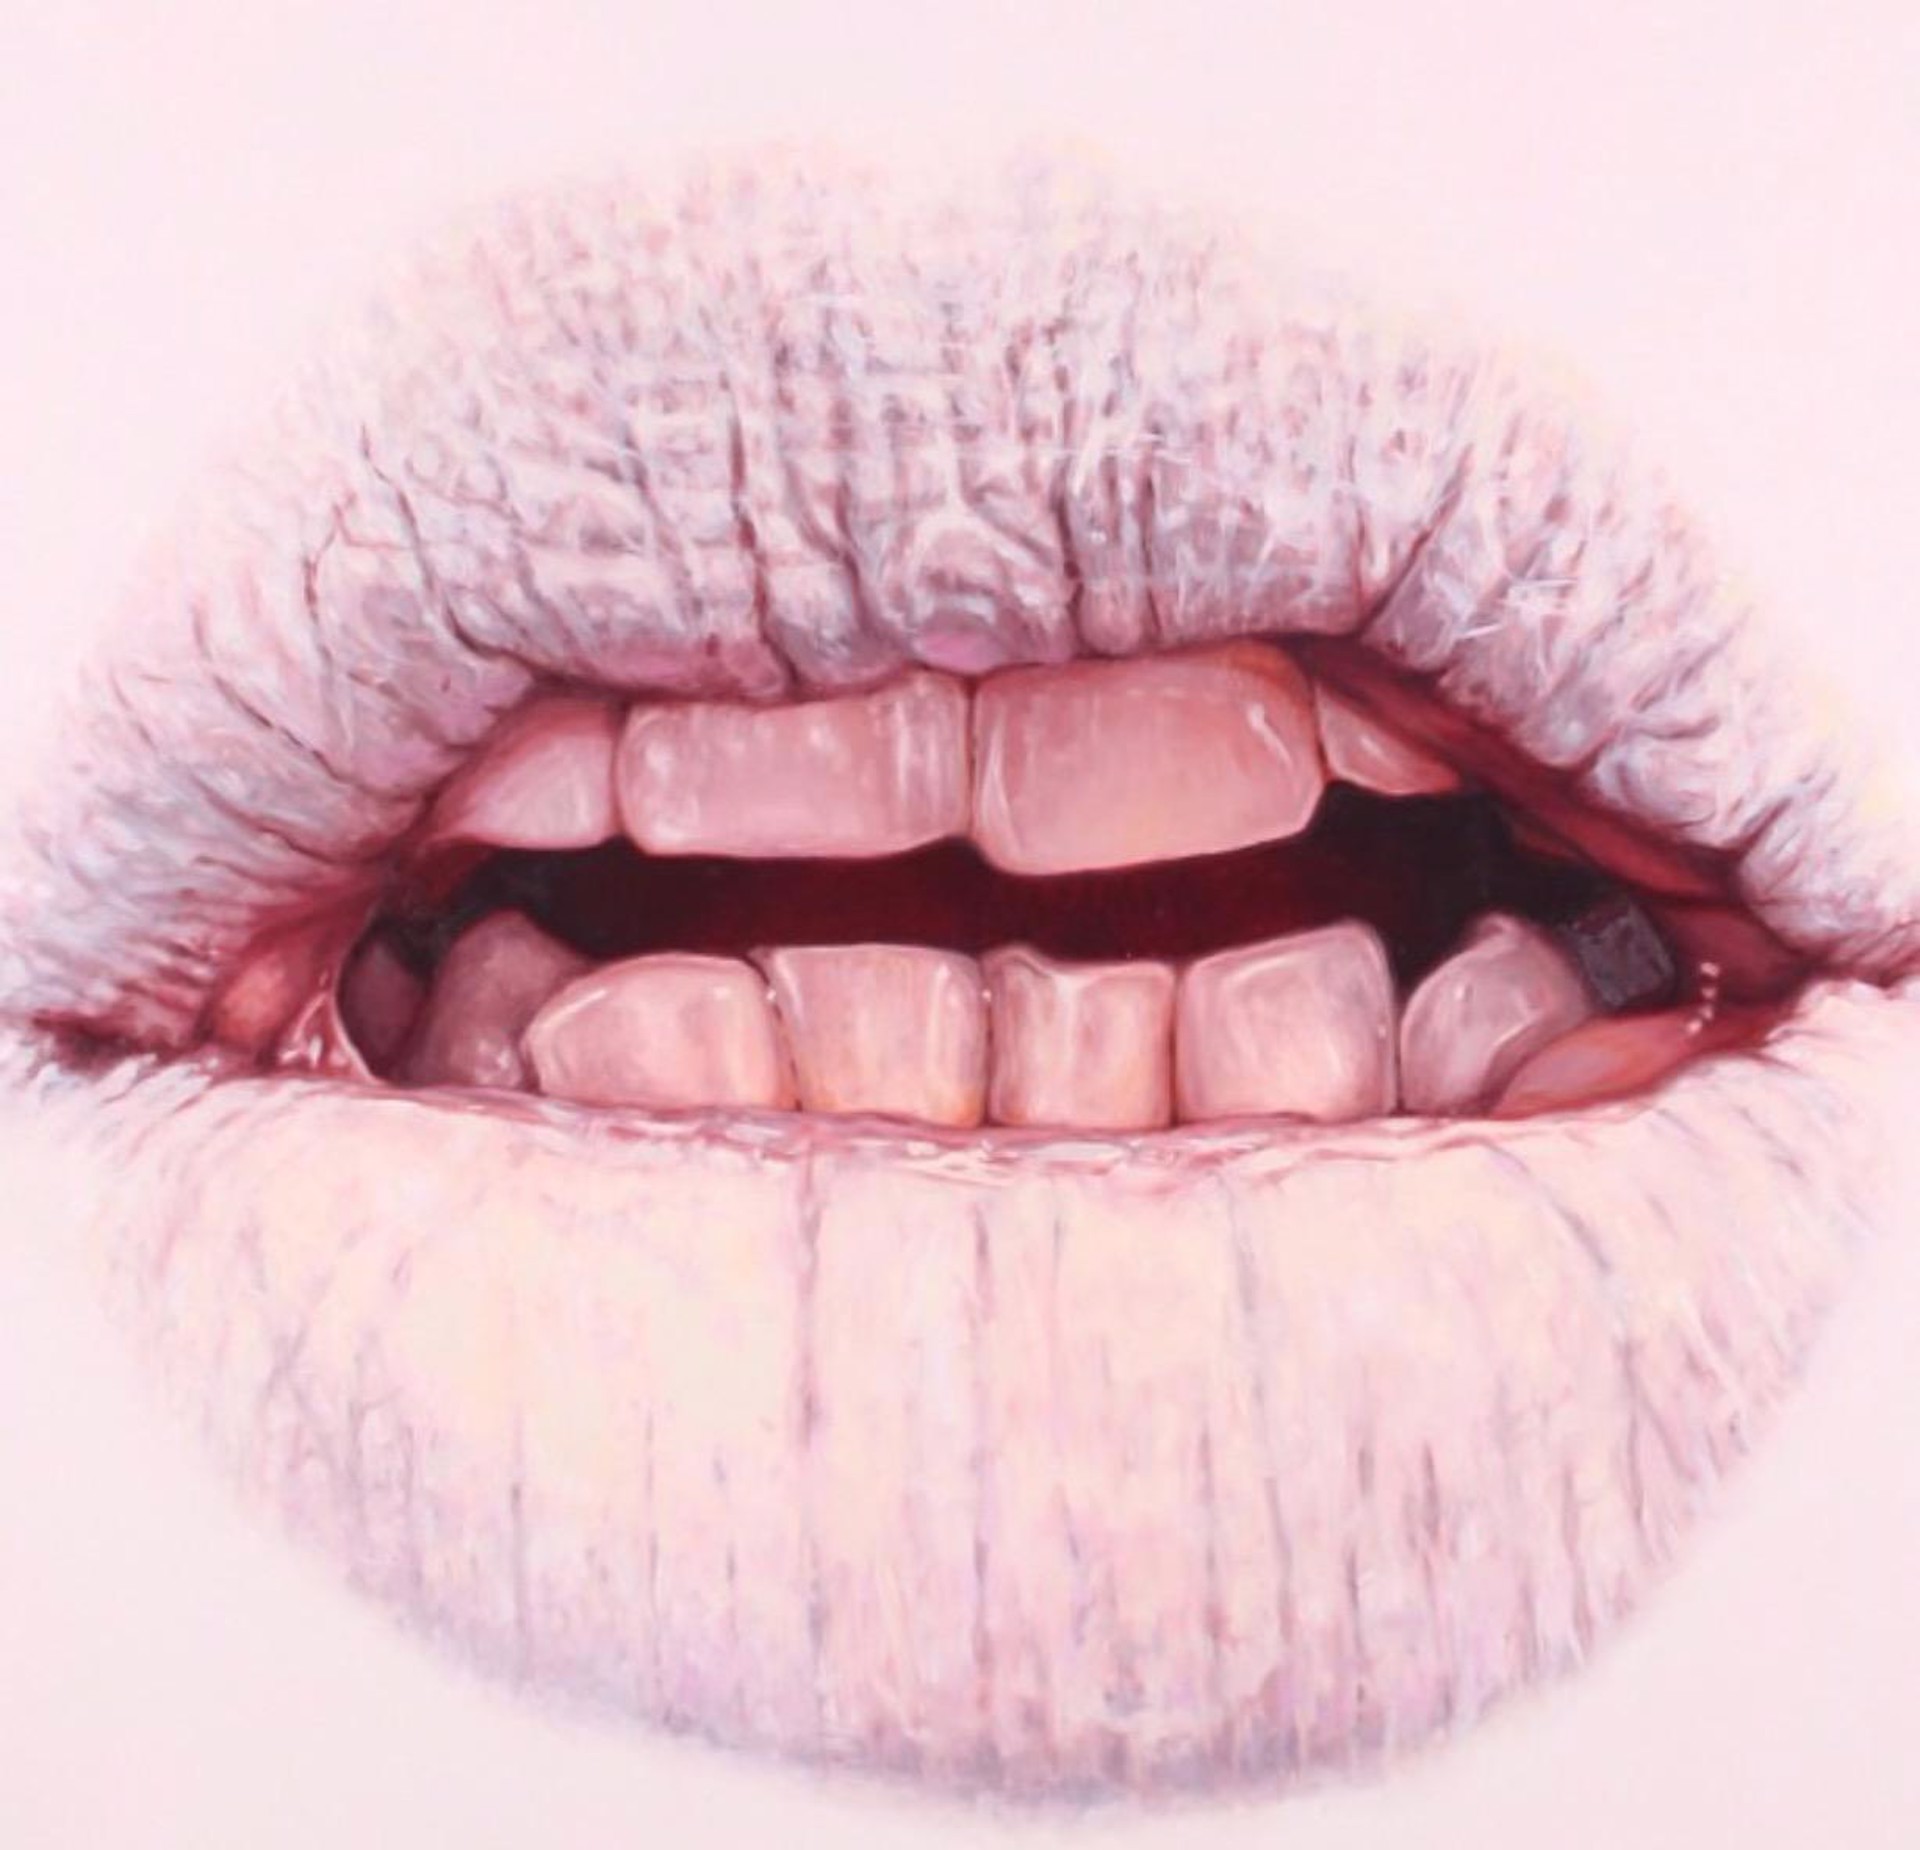 White Mouth by Elizabeth Winnel